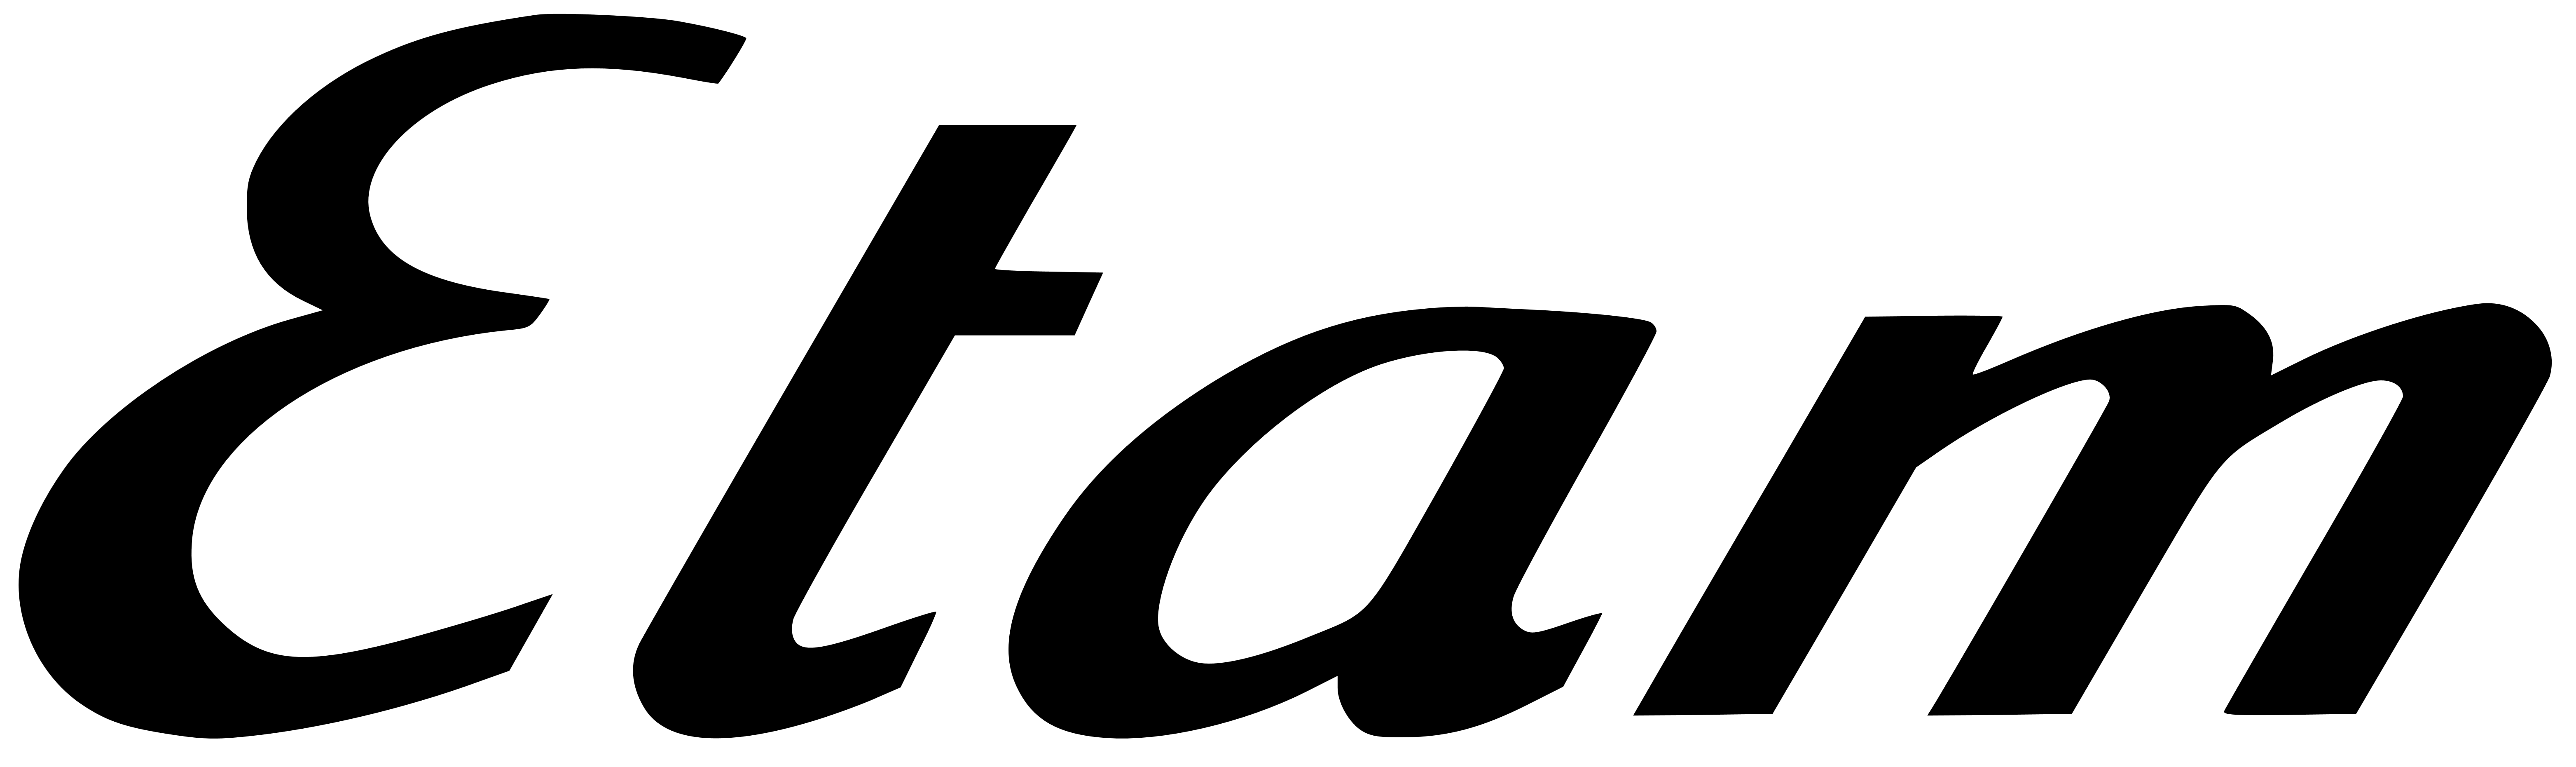 Etam logo, logotype